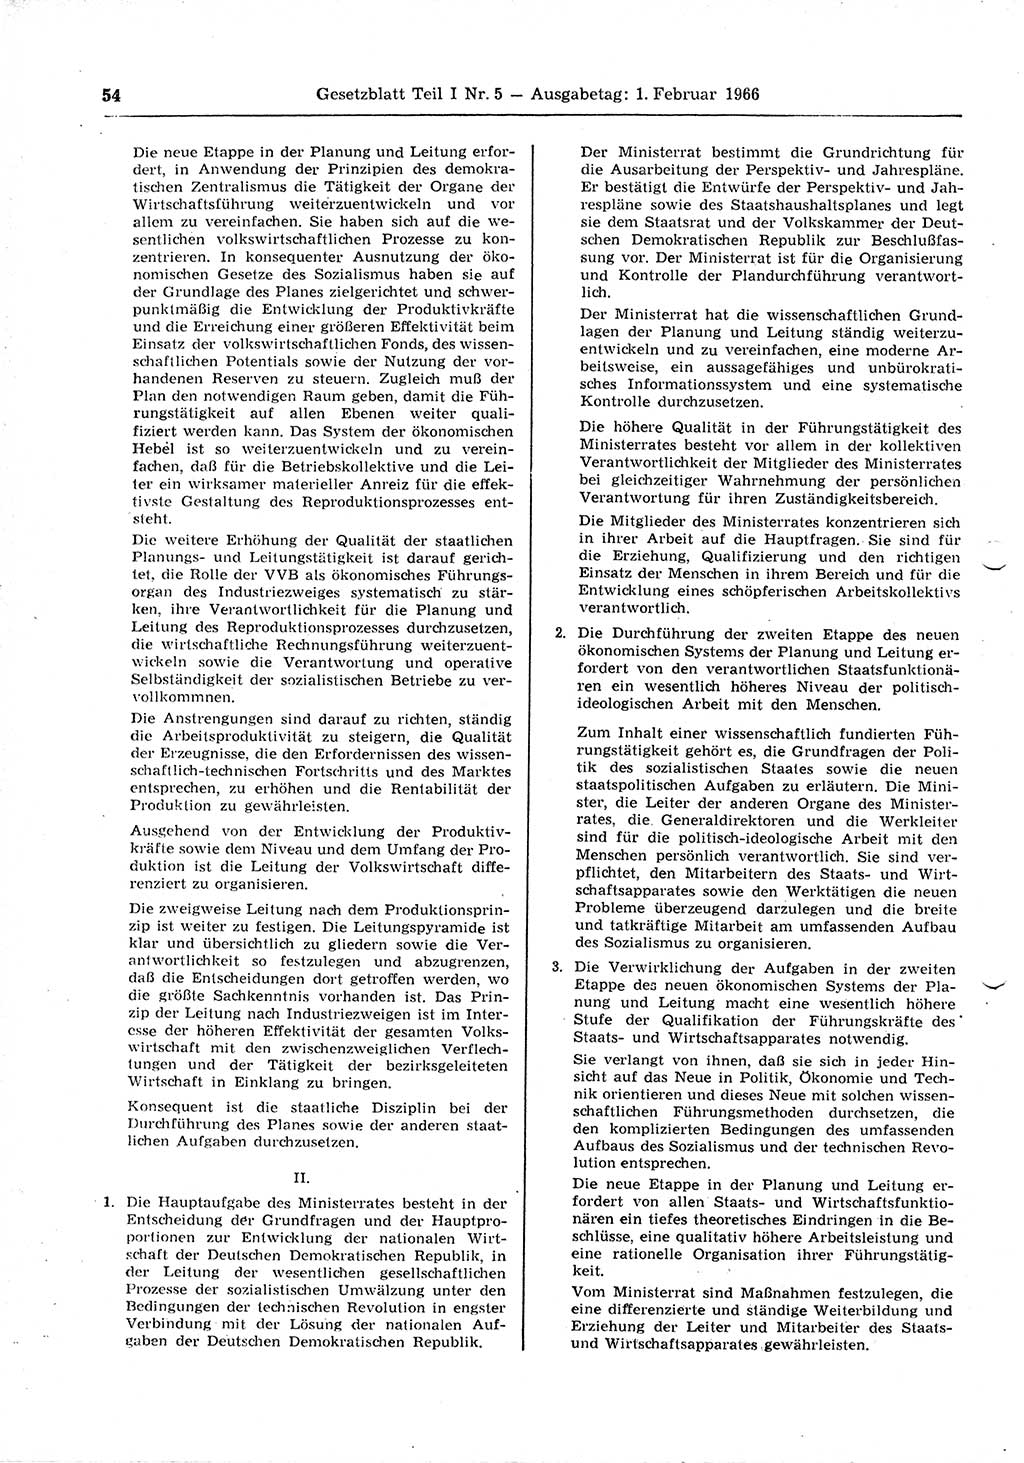 Gesetzblatt (GBl.) der Deutschen Demokratischen Republik (DDR) Teil Ⅰ 1966, Seite 54 (GBl. DDR Ⅰ 1966, S. 54)